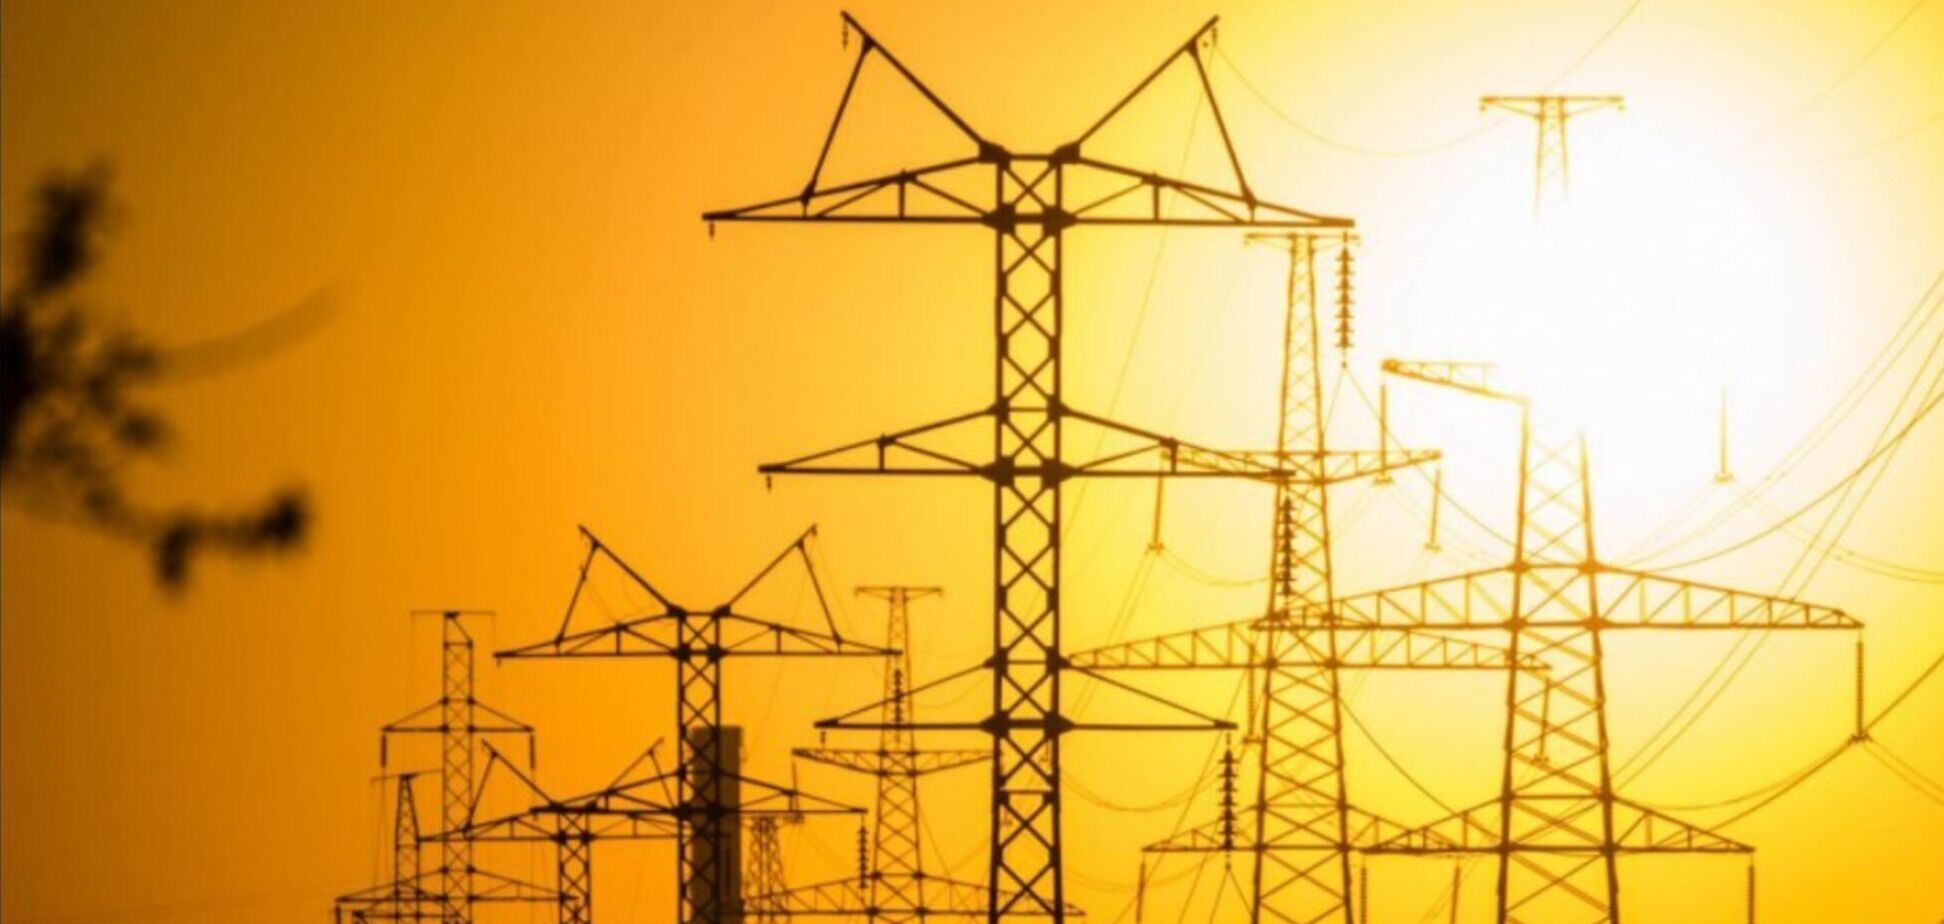 Ціна електроенергії в Україні в 5 разів нижча, ніж в східній Європі - ДП 'Оператор Ринку'